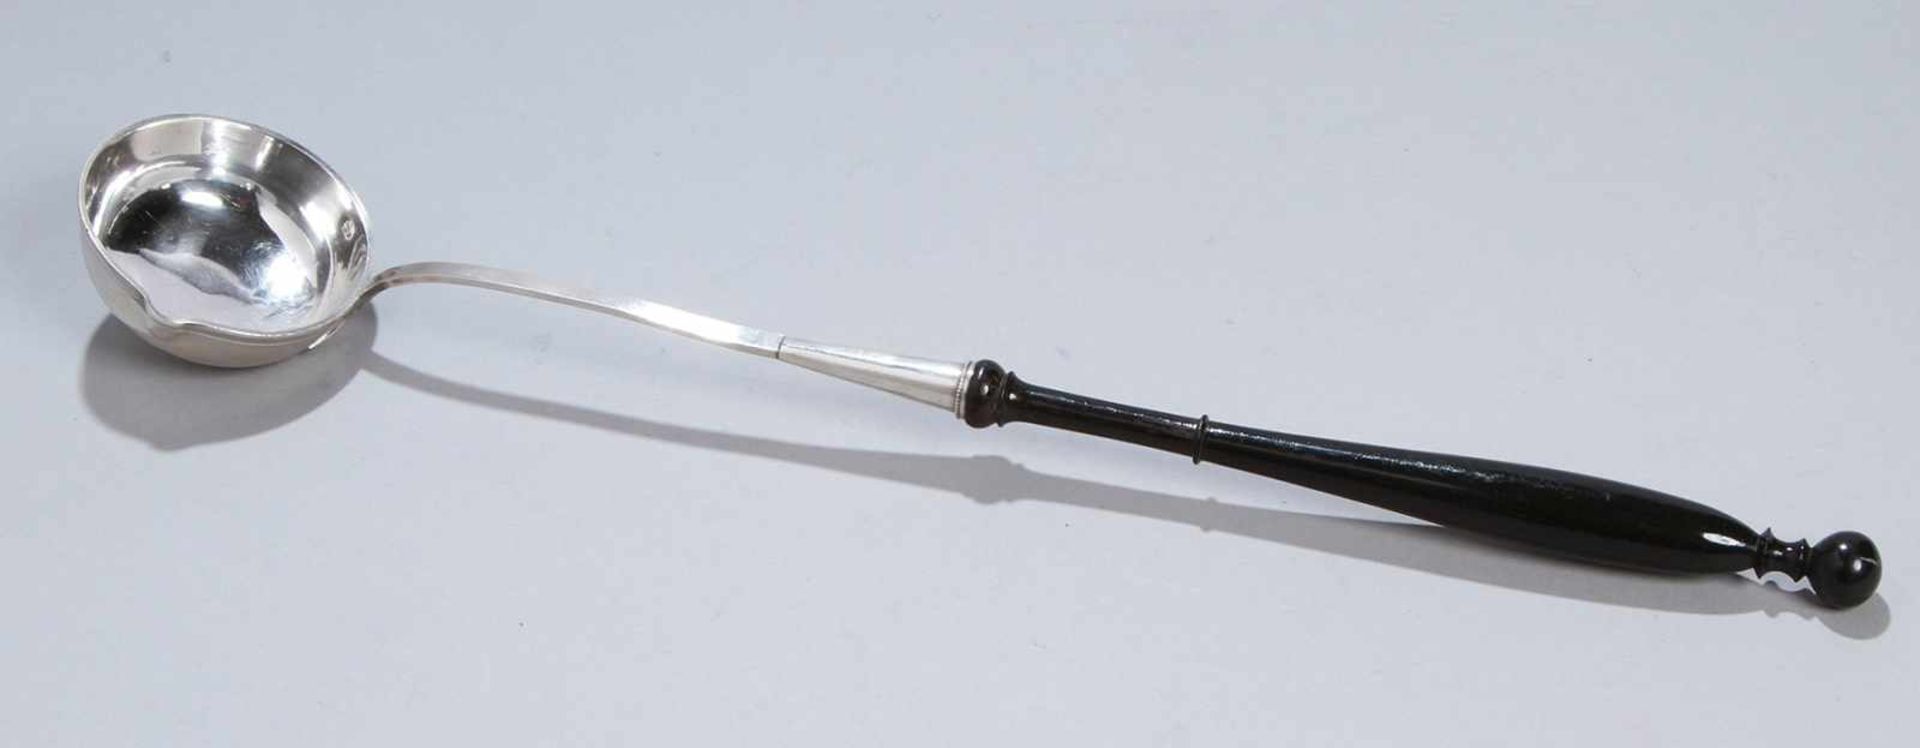 Saucen-Kelle, Frankreich, 19. Jh., Silber 950, strenge Form, ebonisierter Holzgriff, L 35cm- - -20.